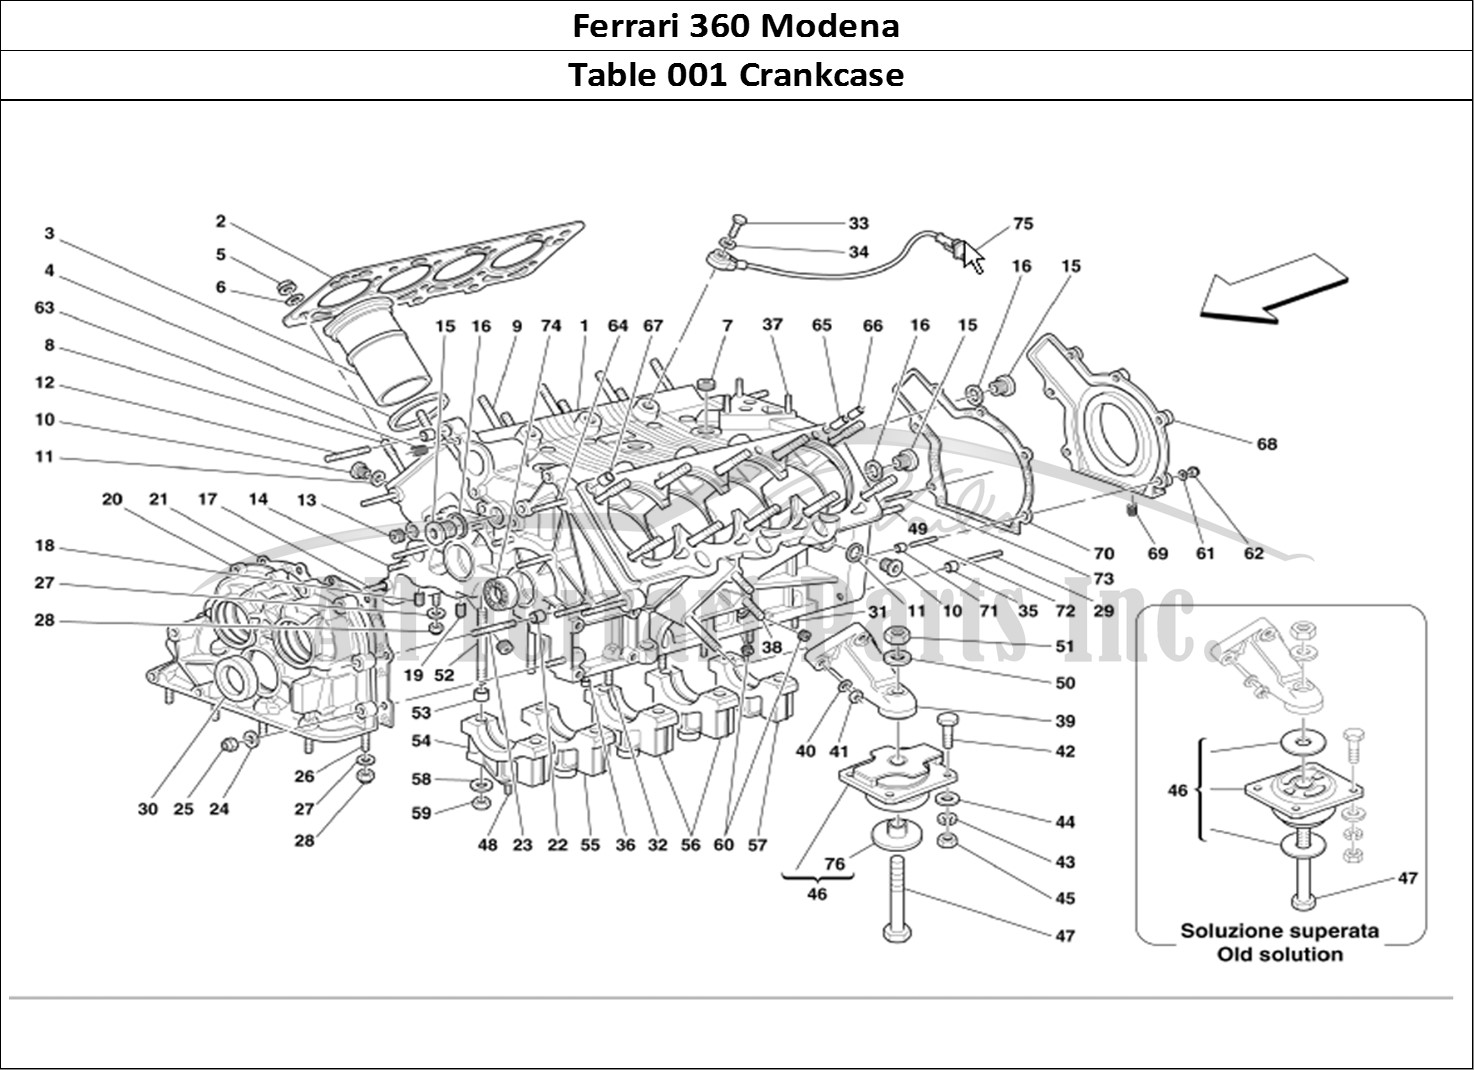 Ferrari Parts Ferrari 360 Modena Page 001 Crankcase